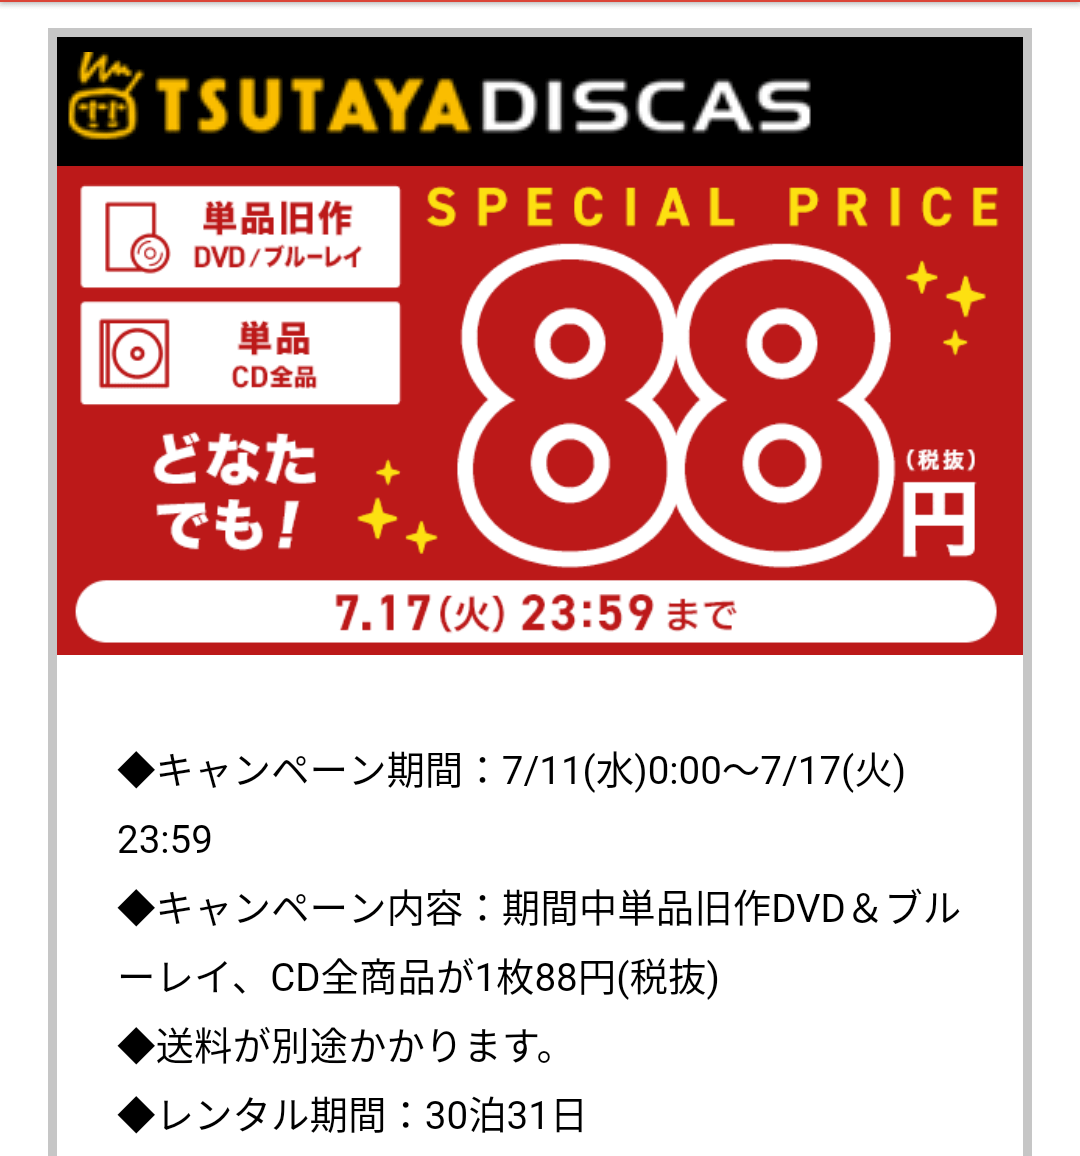 ゲオ Tsutaya Cd レンタル 料金